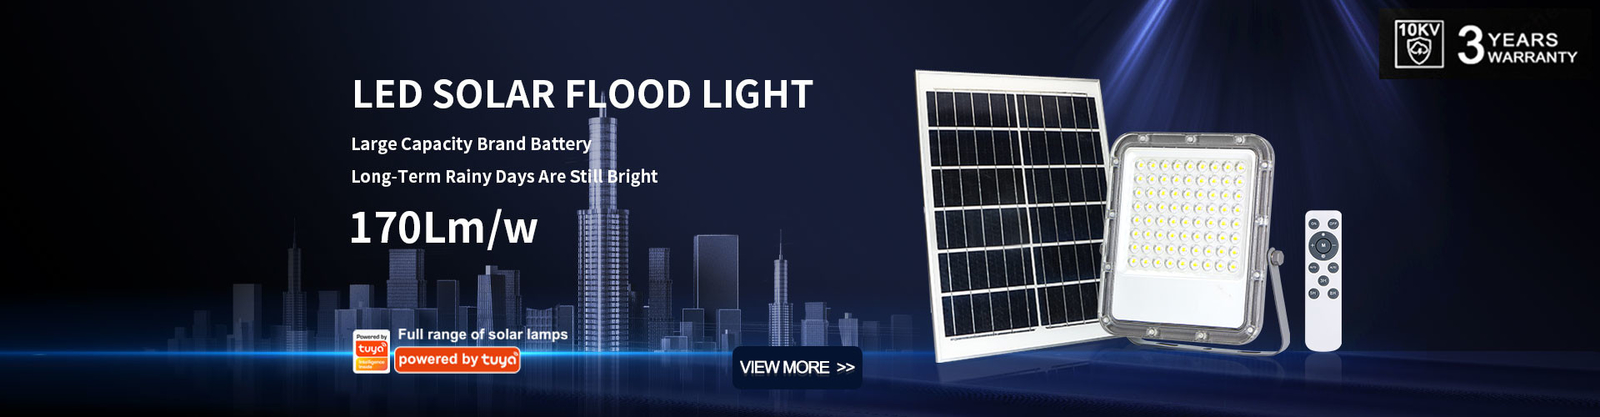 جودة أضواء الشوارع LED بالطاقة الشمسية مصنع